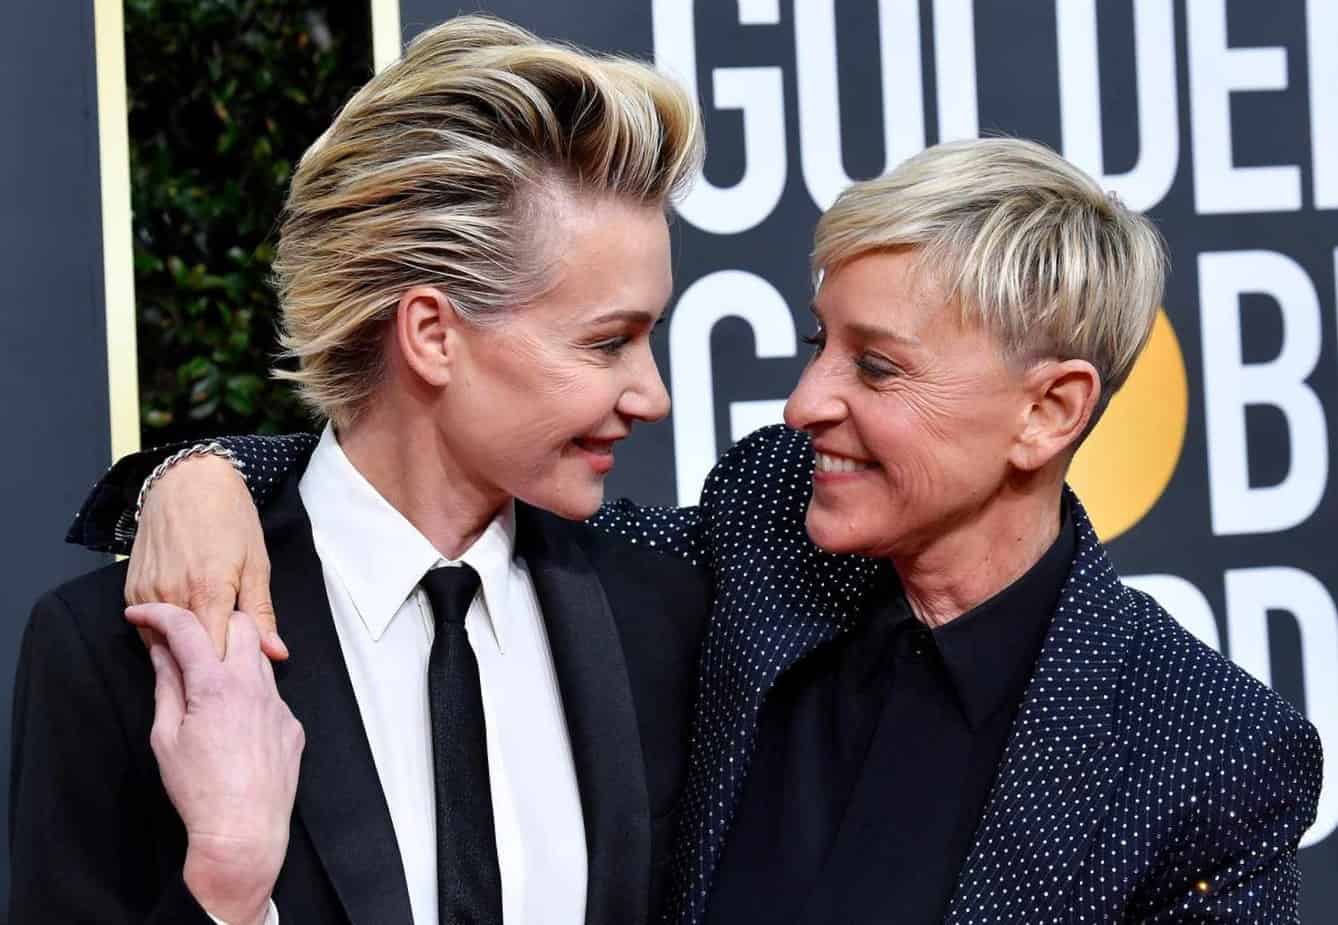 Ellen DeGeneres and Portia de Rossi got married in 2008